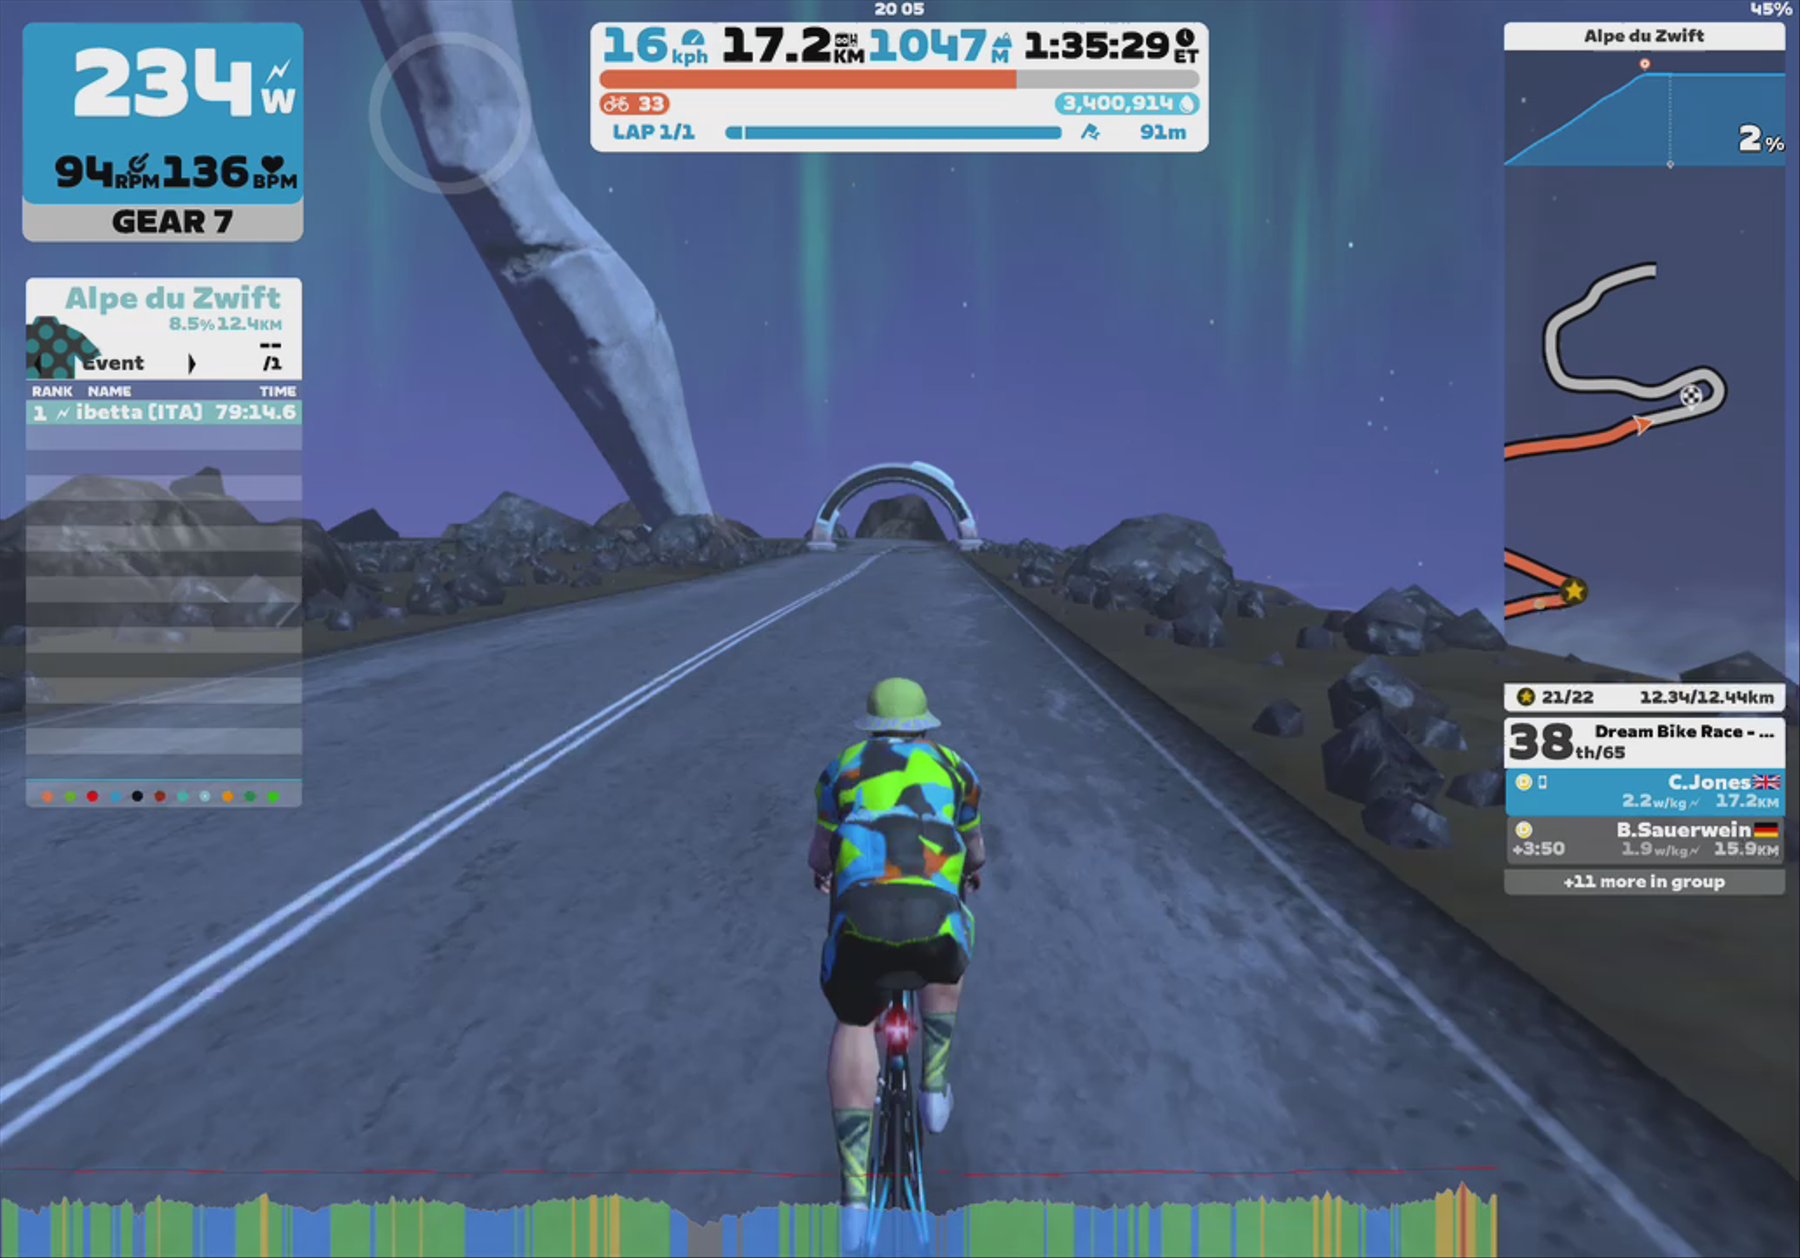 Zwift - Race: Dream Bike Race - Alpe du Zwift (D) on Road to Sky in Watopia